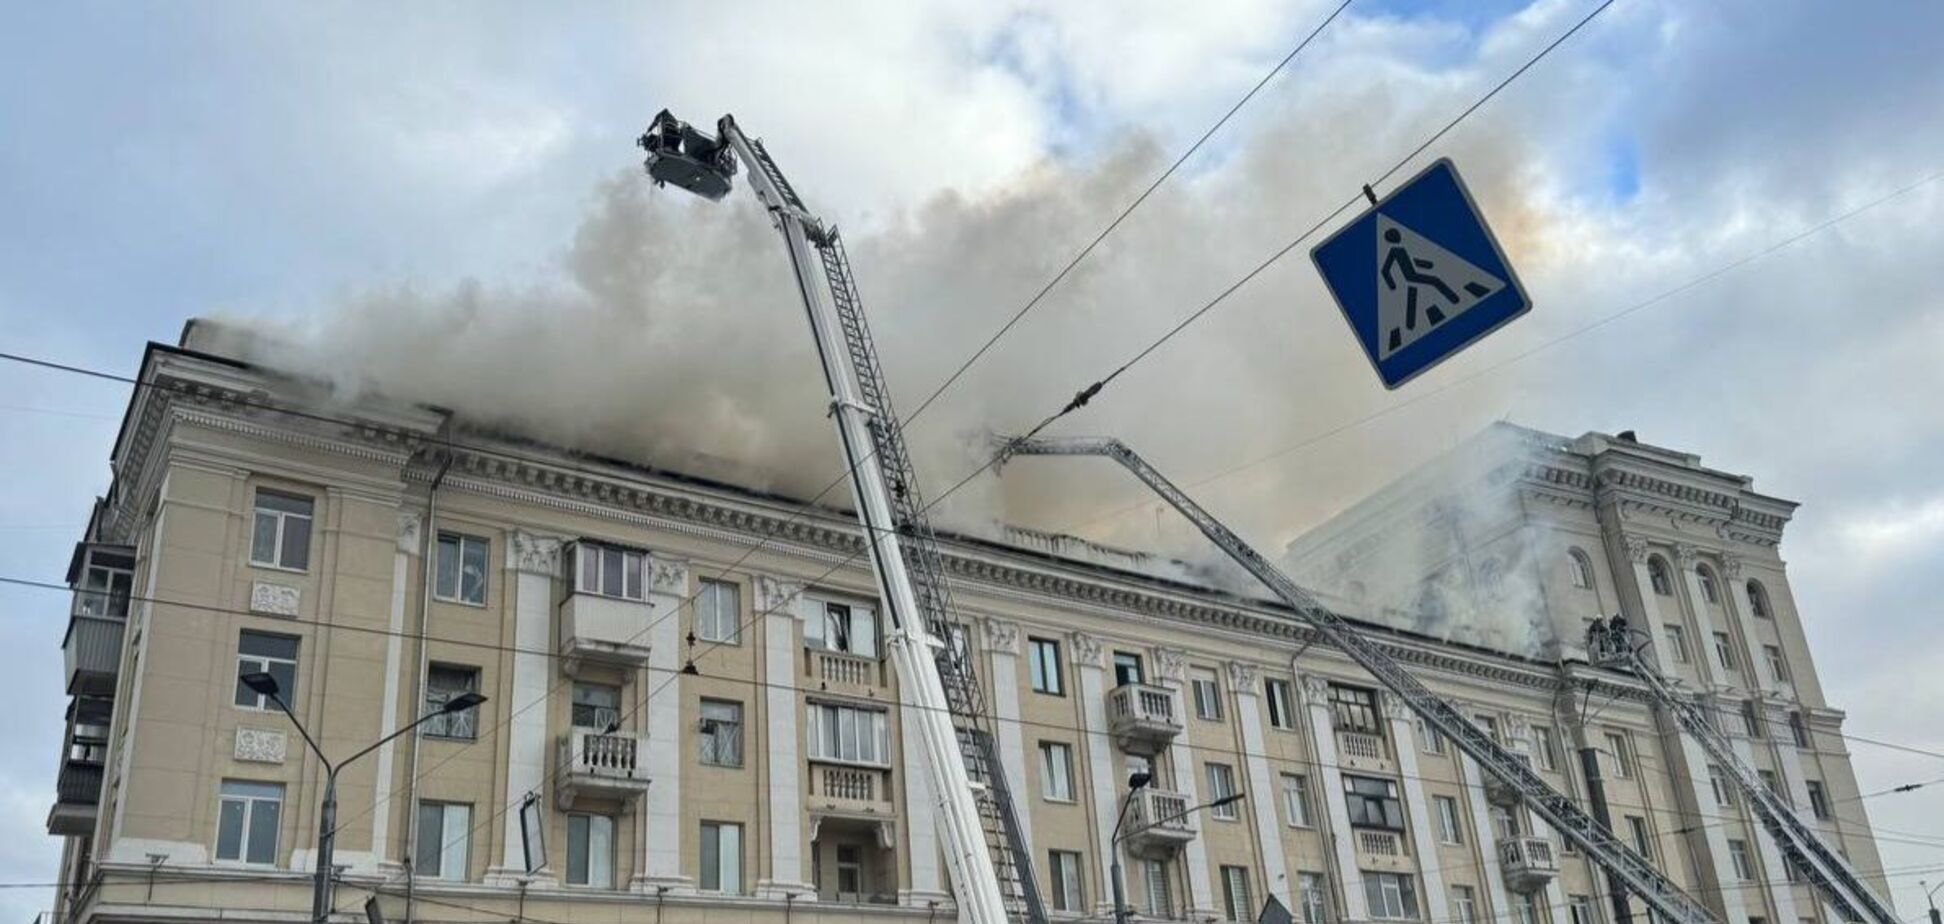 Росія вдарила по Дніпру: є загиблі, 15 постраждалих, горить п'ятиповерхівка, під завалами можуть бути люди